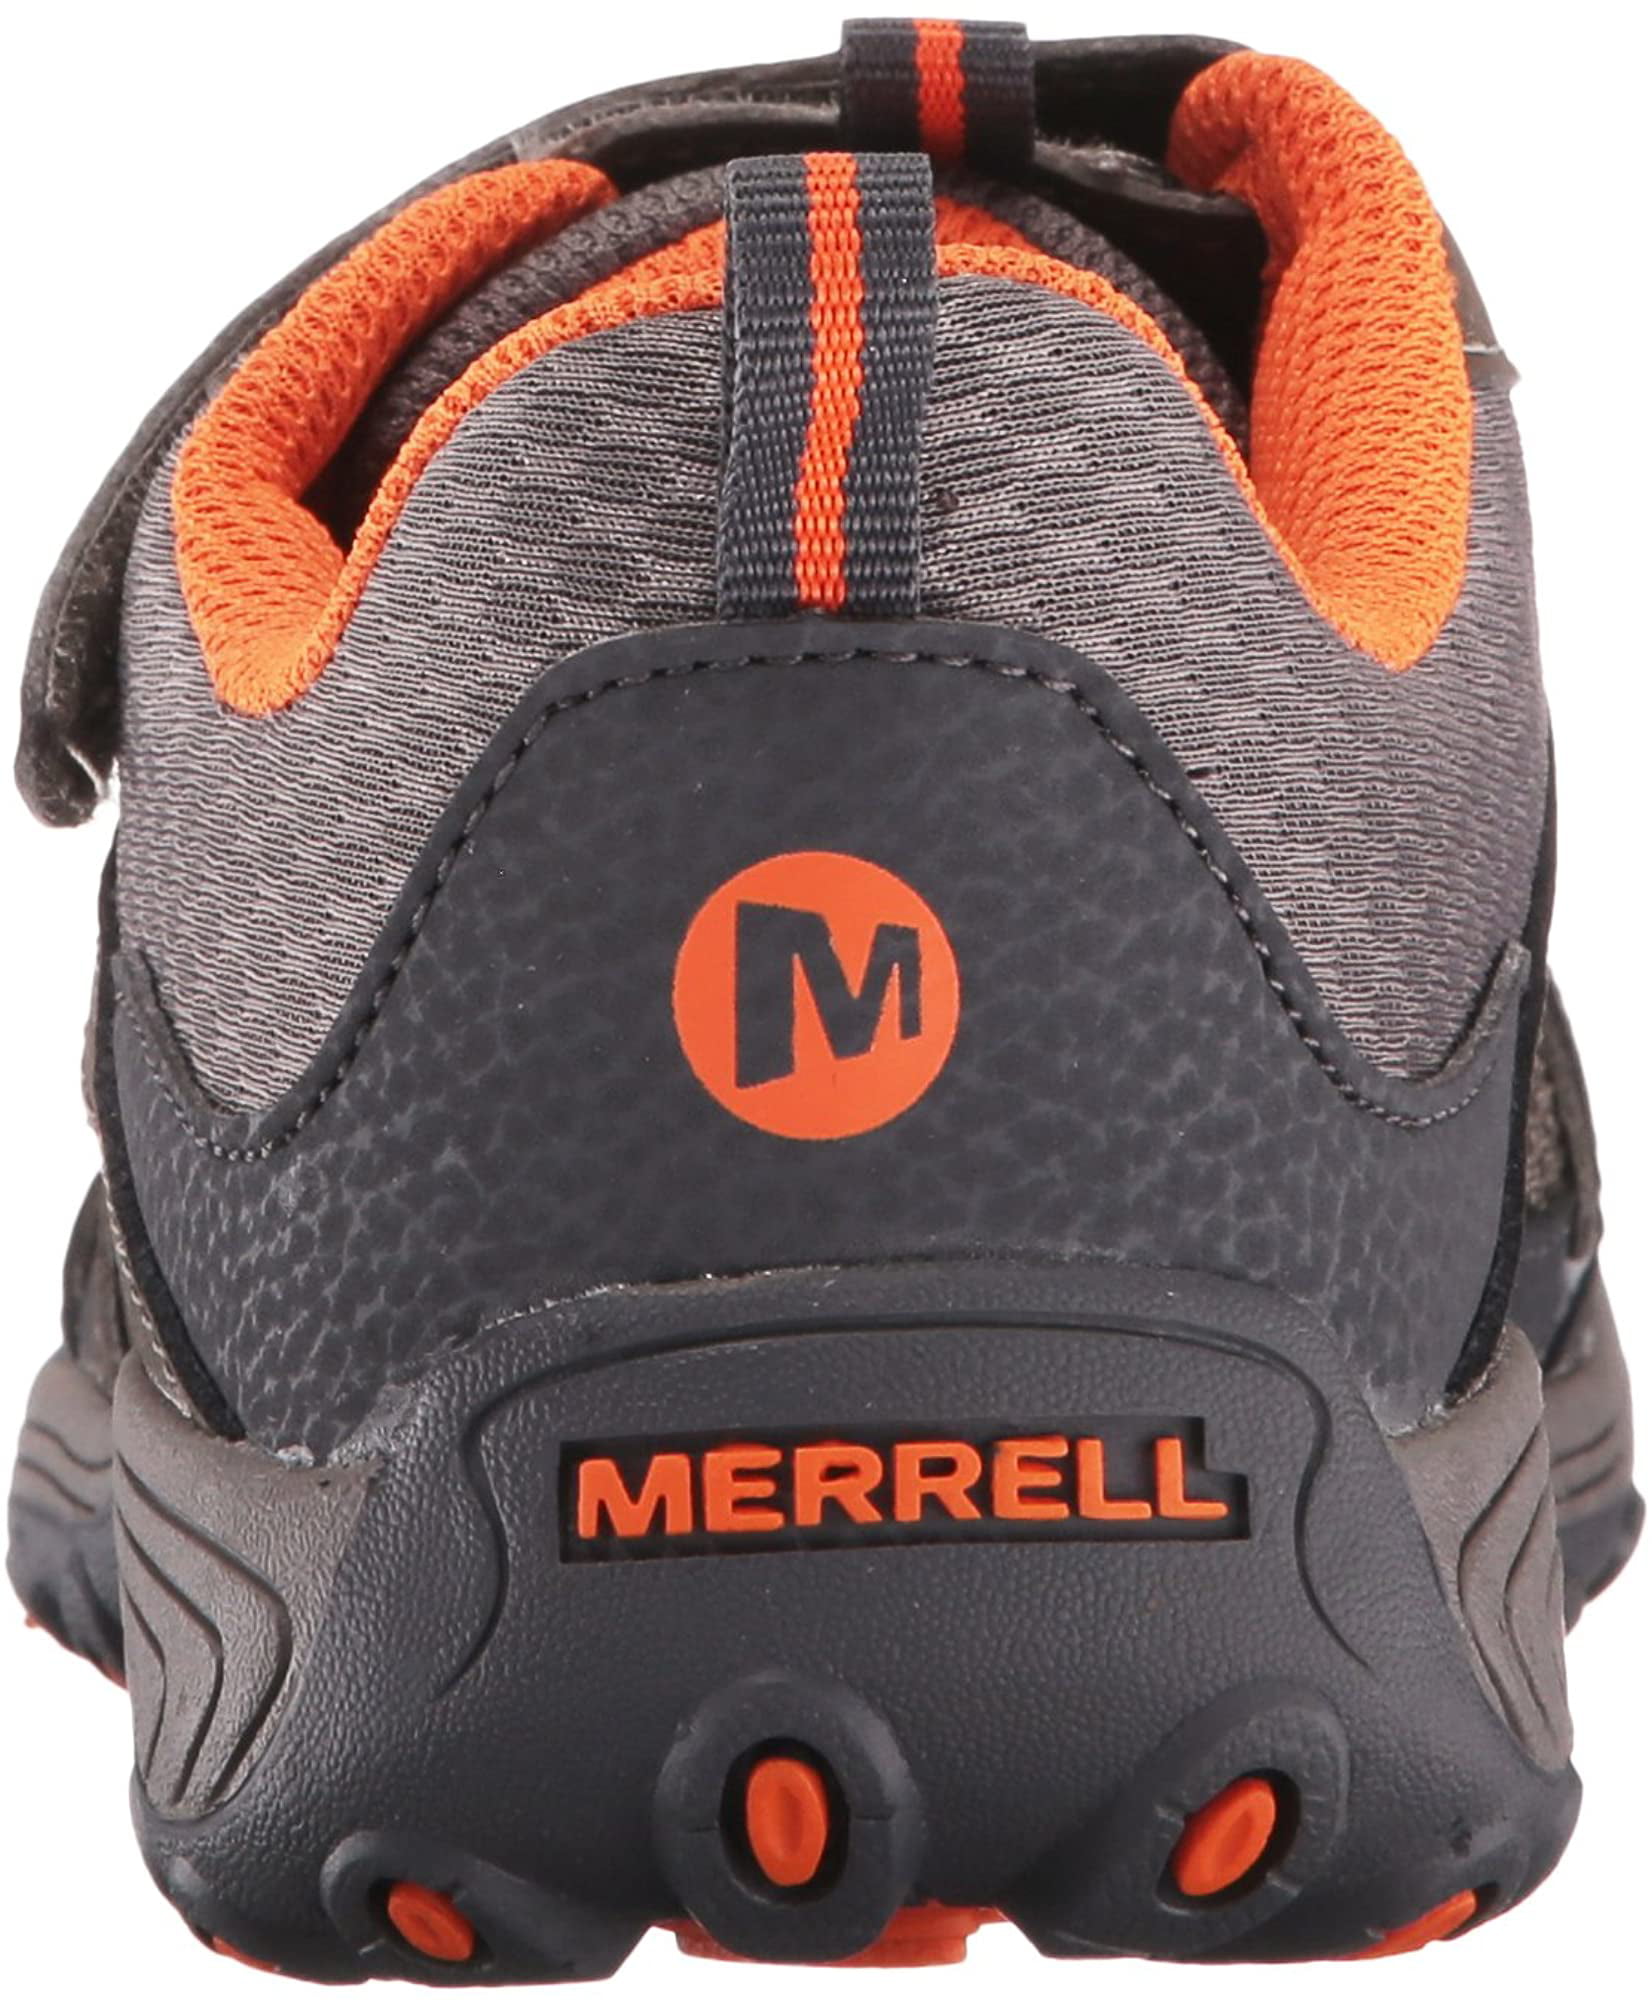 Merrell Unisex-Child Trail Chaser Hiking Sneaker 